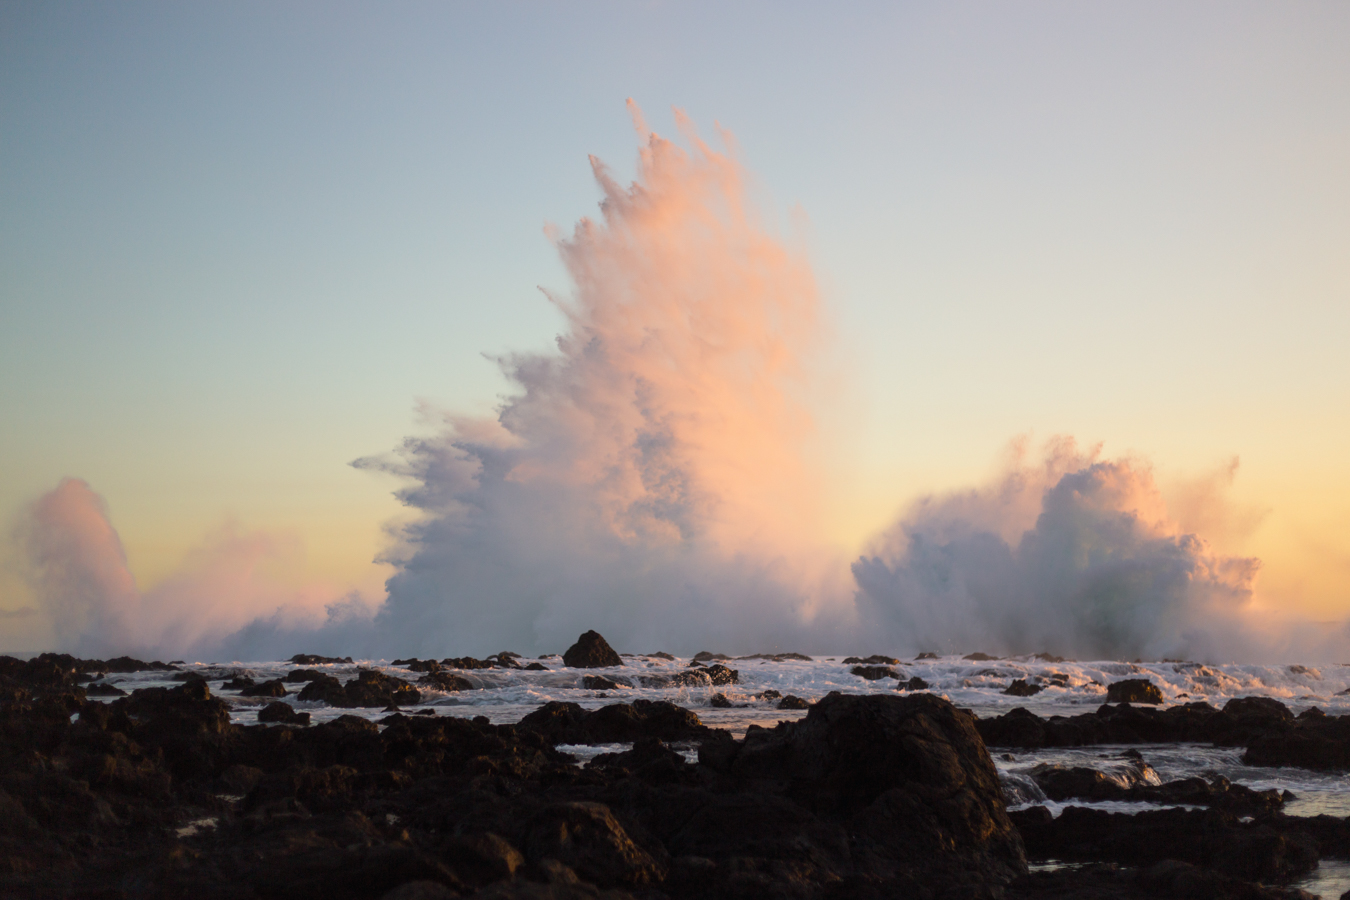 Mur d'eau d'une quinzaine de mètre provoquée par une vague se fracassant contre des rochers à la Réunion vers Saint-Leu lors d'un couché de soleil